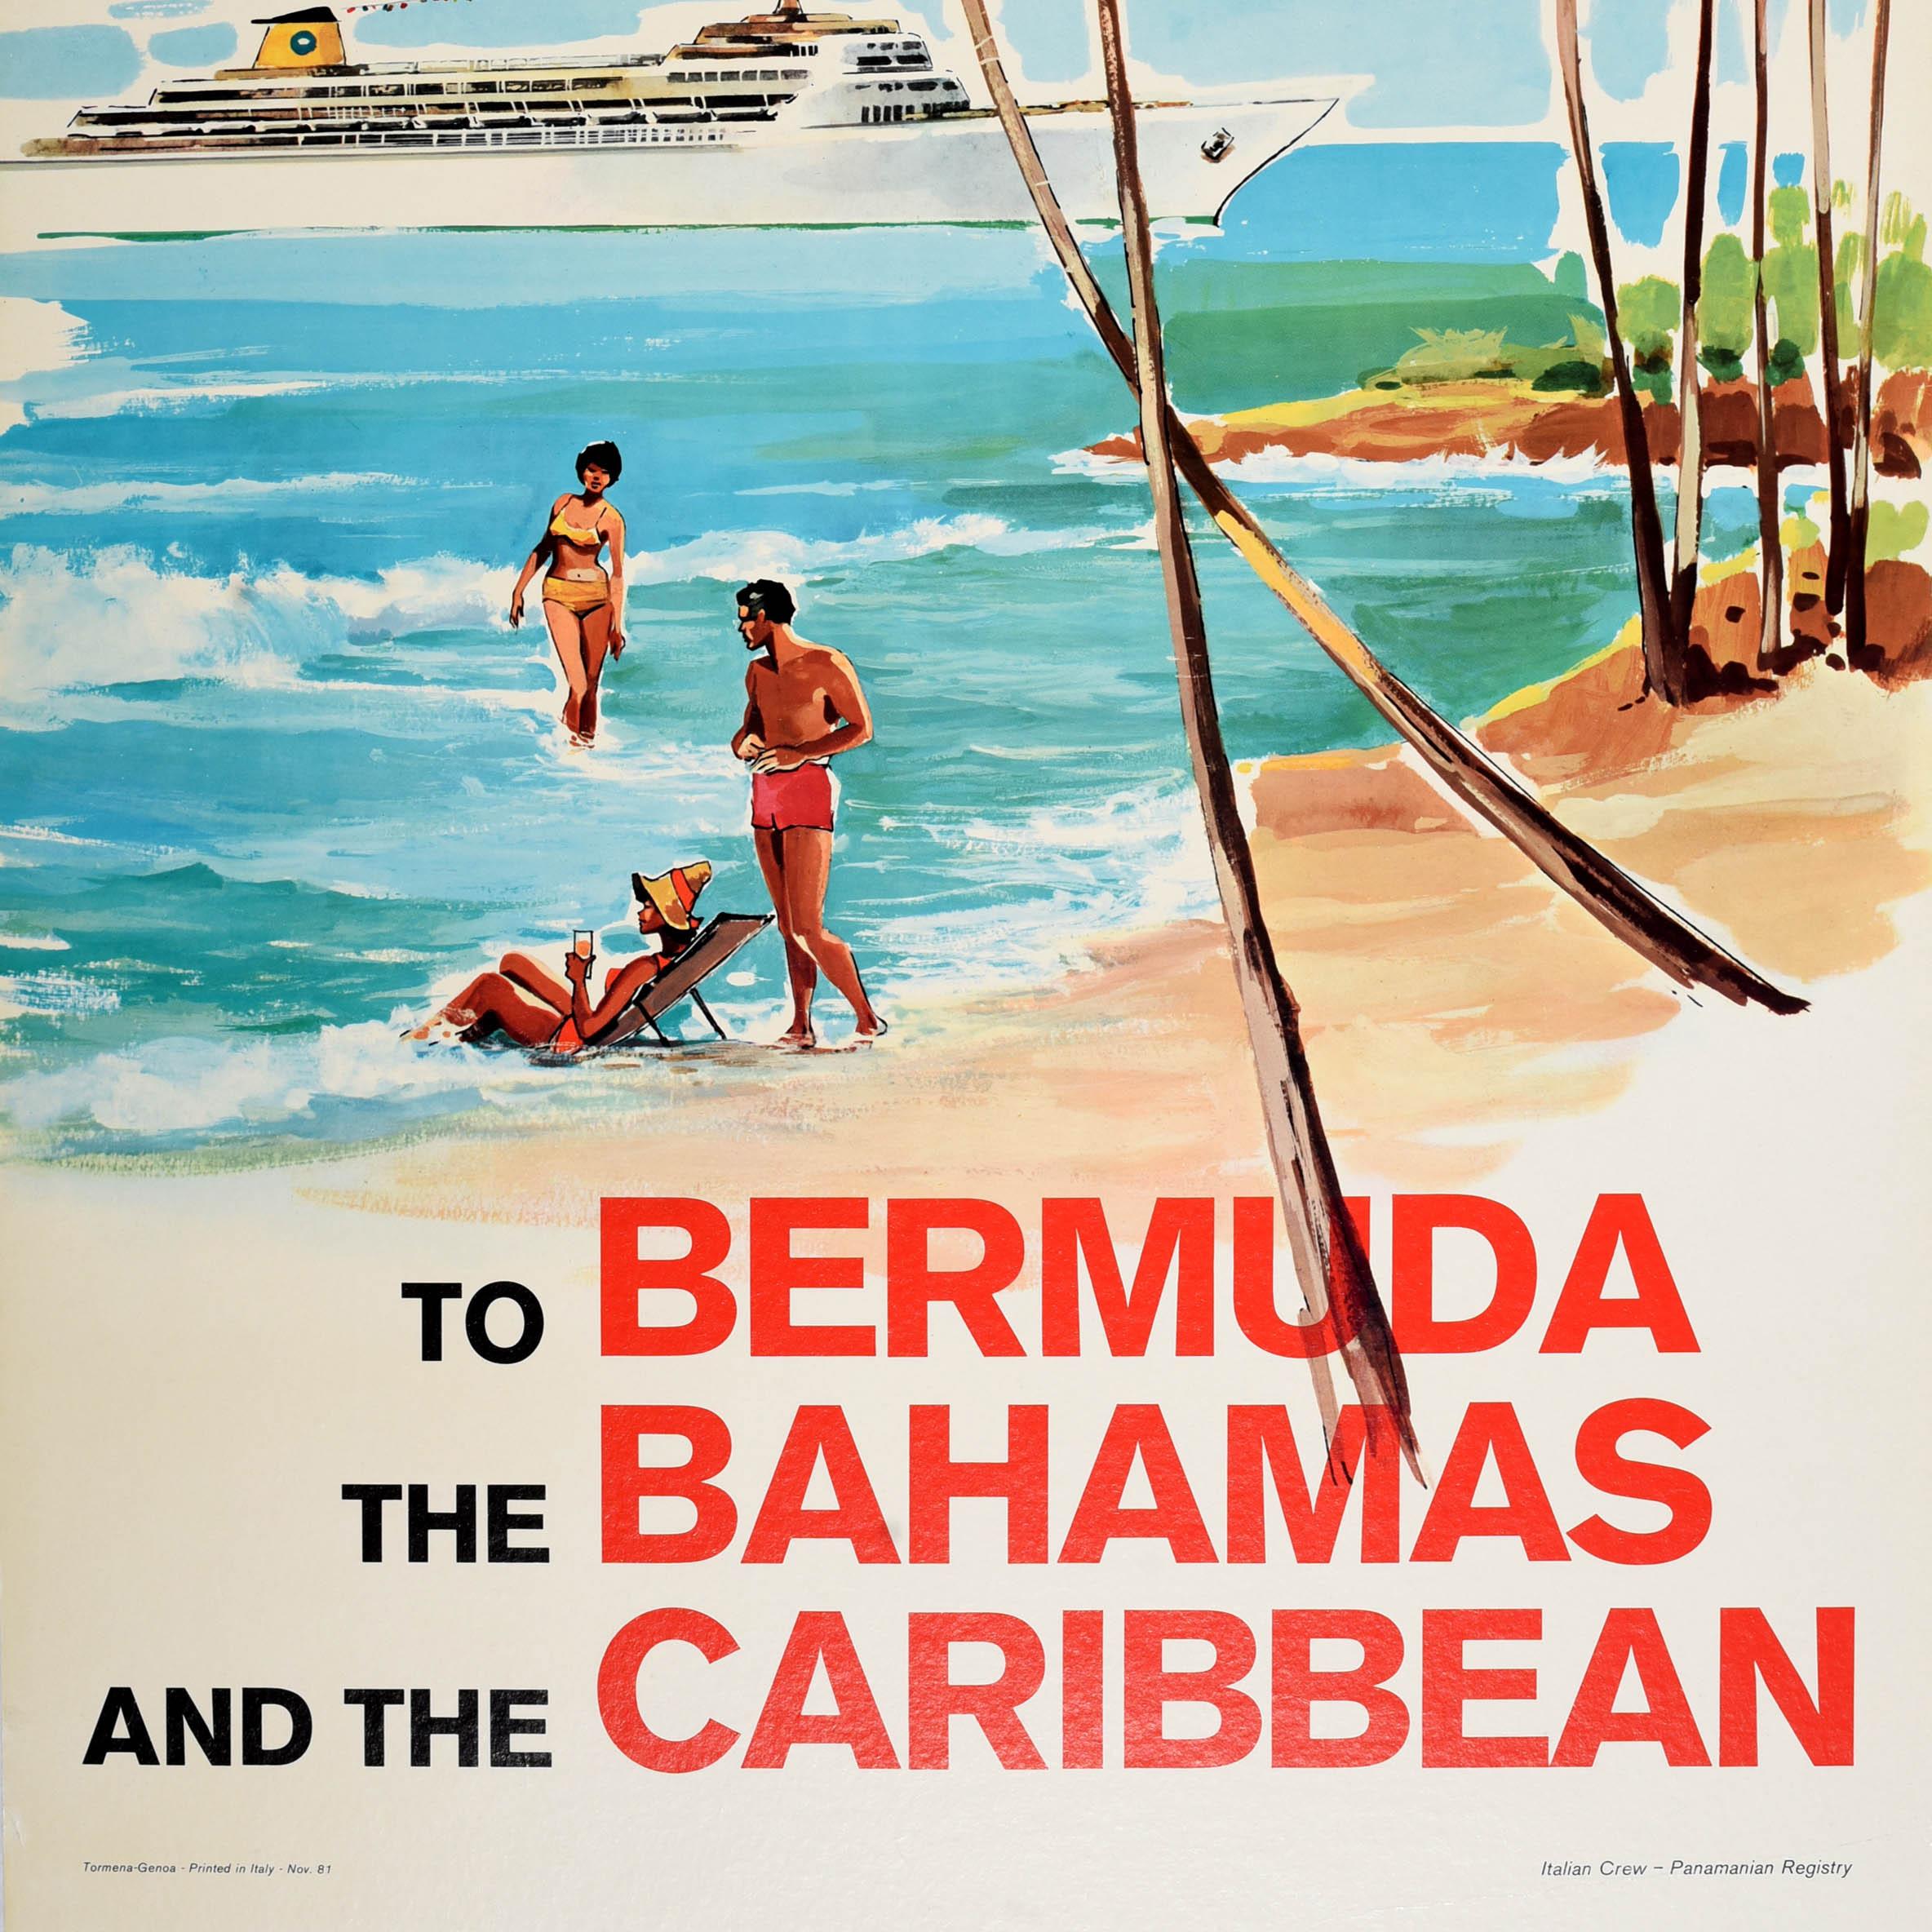 Original vintage Reiseplakat - Home Lines Kreuzfahrt mit S.S. Oceanic zu den Bahamas, Bermudas und der Karibik - mit einem großartigen Bild, das Passagiere einer Kreuzfahrt zeigt, die sich an einem Sandstrand unter Palmen entspannen, mit einer Dame